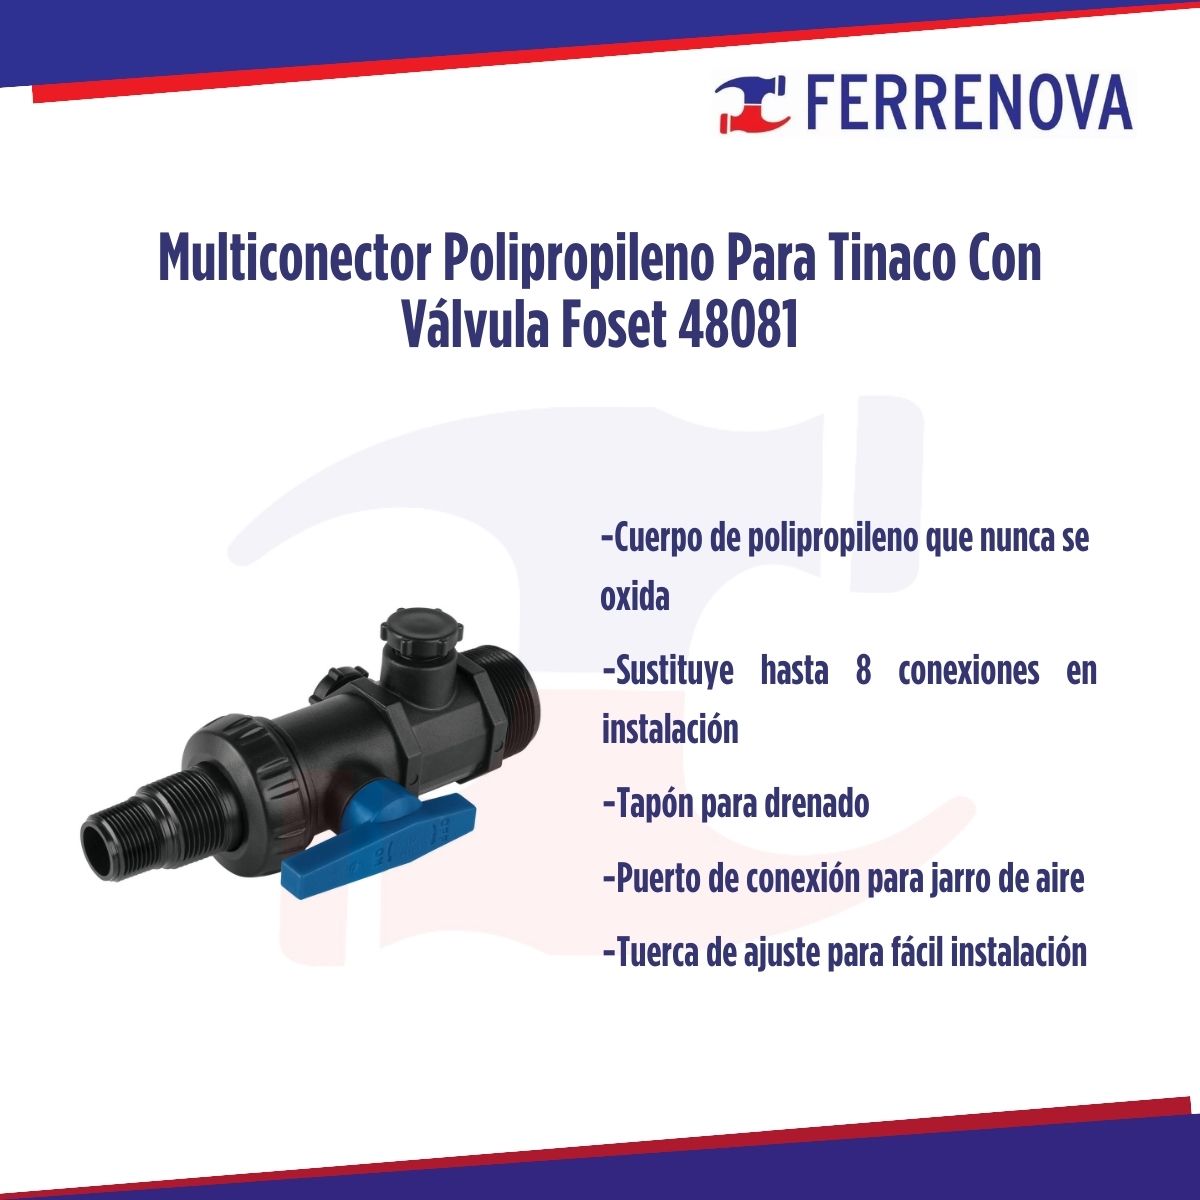 Multiconector Polipropileno Para Tinaco Con Válvula Foset 48081